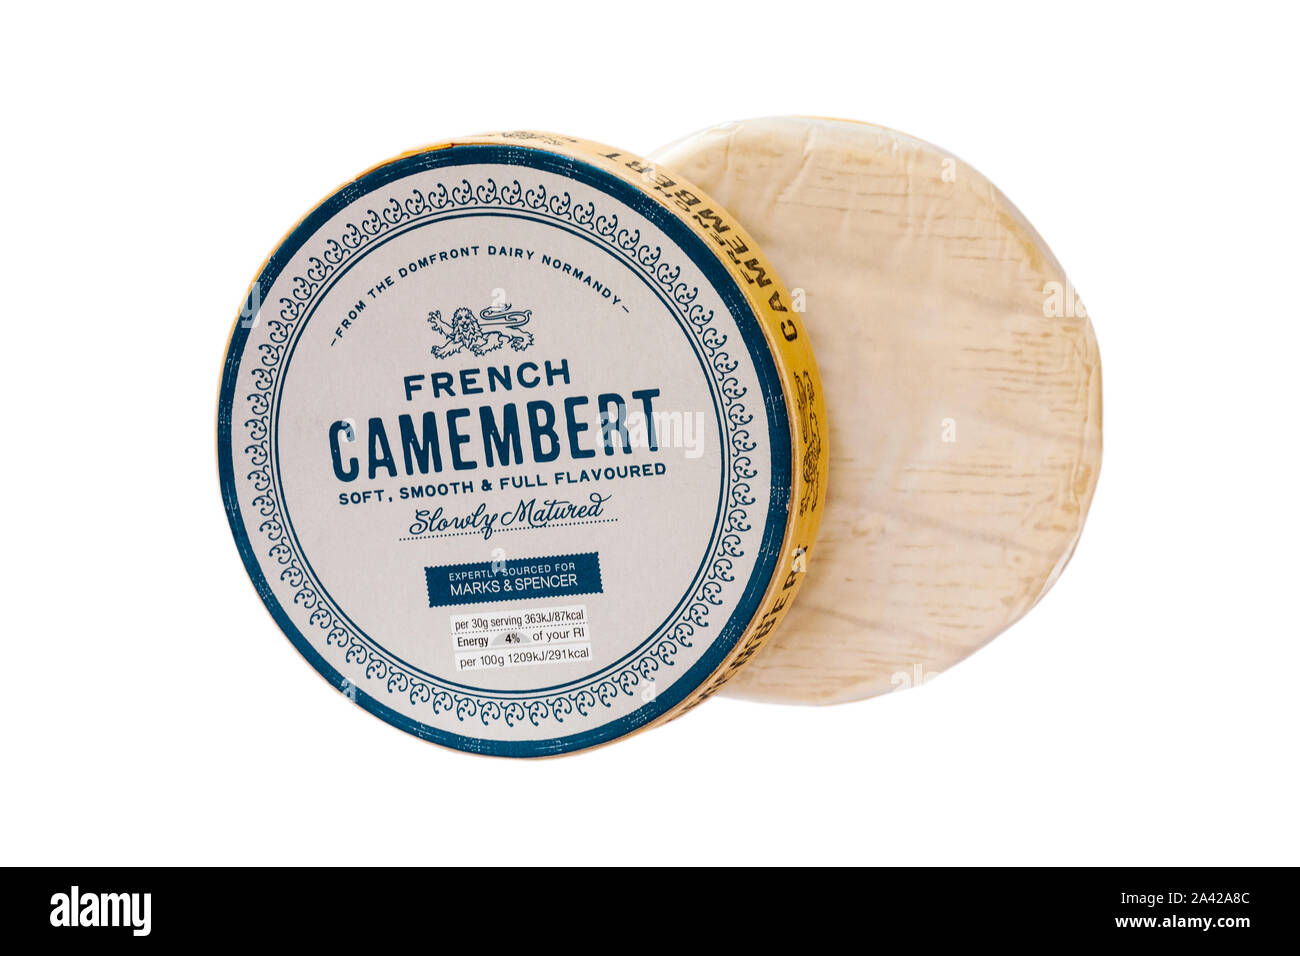 Französischer Camembert weich und voll langsam aromatisiert fachmännisch gereift für Marks & Spencer bezogen auf weißem Hintergrund Stockfoto